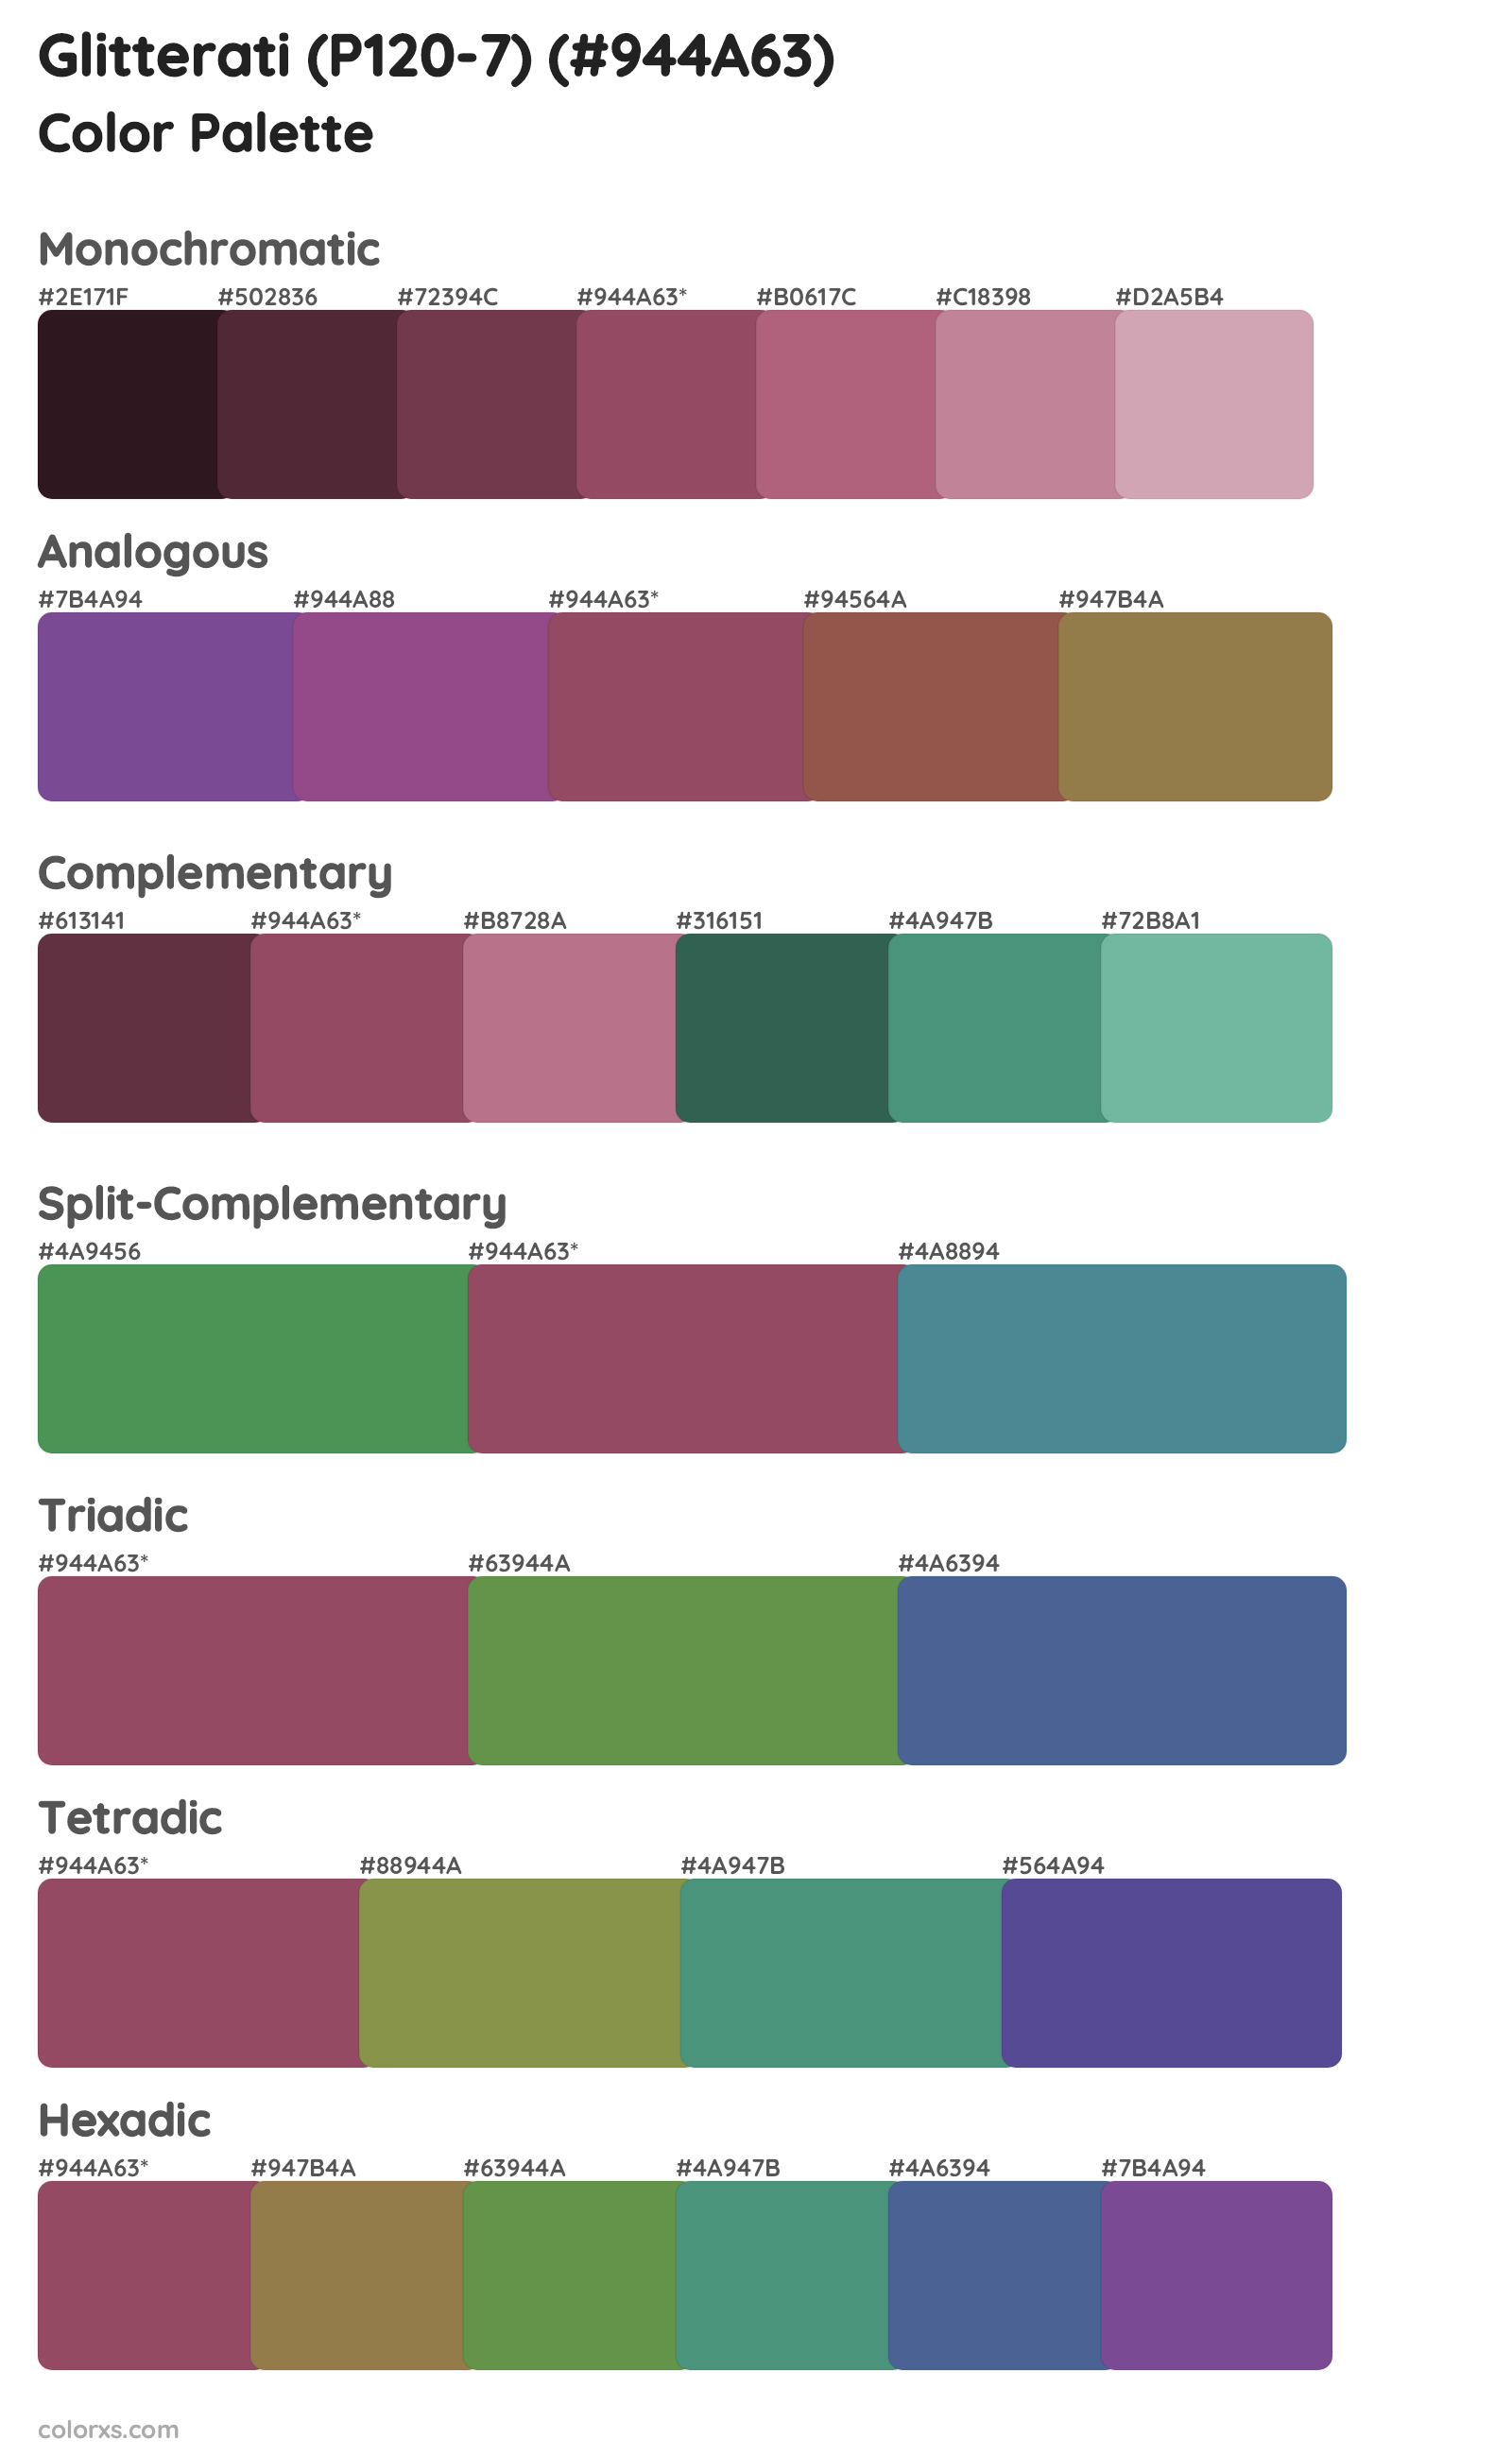 Glitterati (P120-7) Color Scheme Palettes